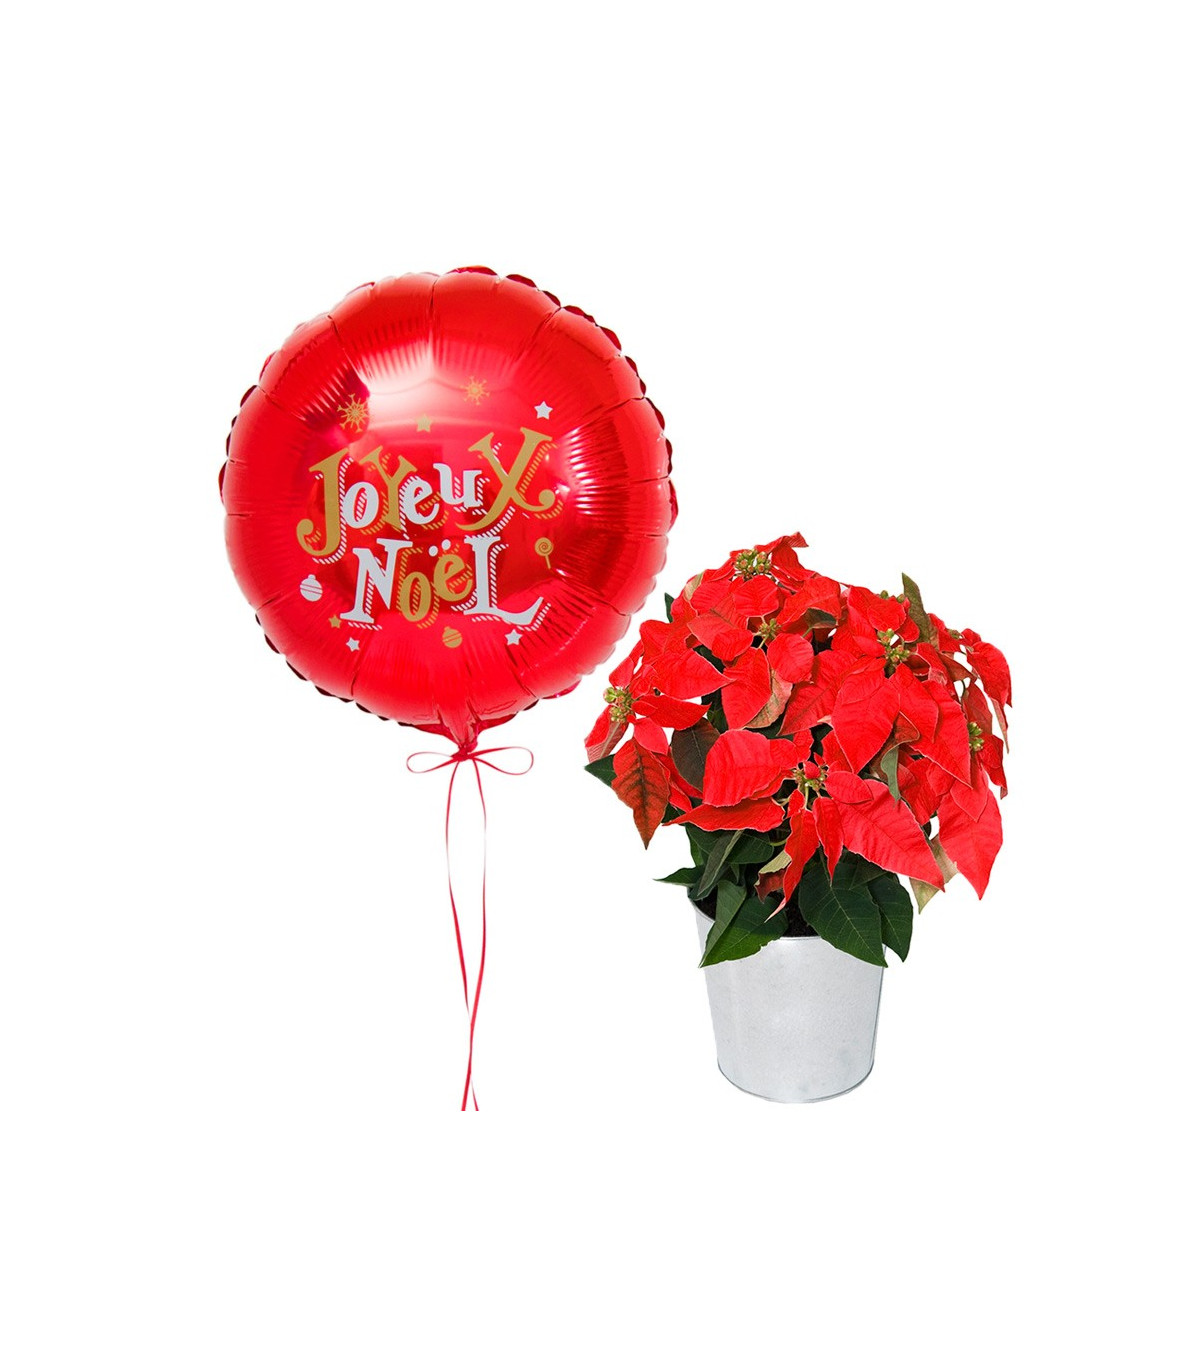 Ballon et Fleurs de Noël - Cadeau original de noël D'lys couleurs